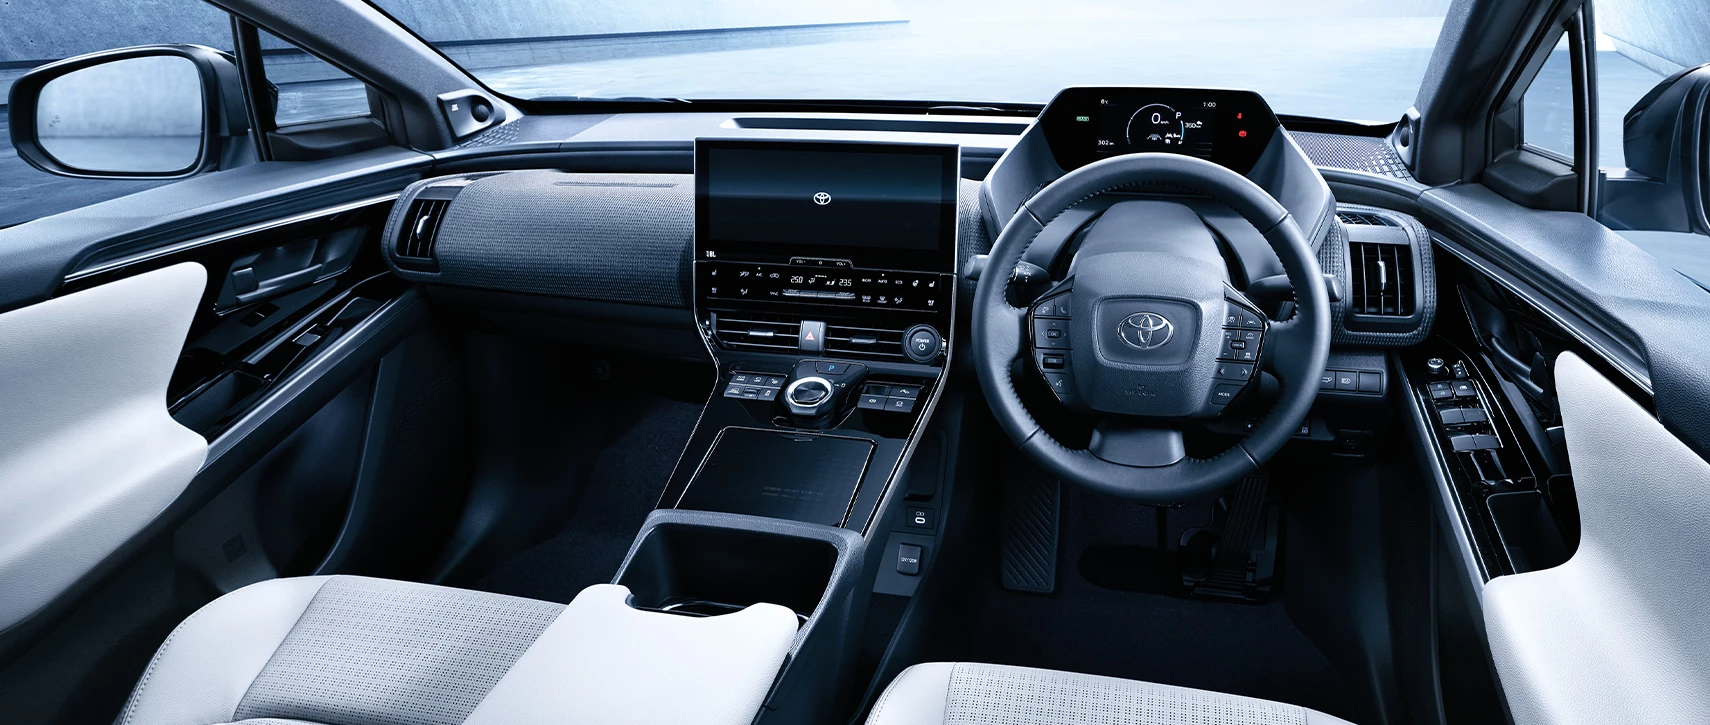 มาซักที! Toyota เปิดตัวรถยนต์ไฟฟ้ารุ่นแรกของค่าย bZ4x วิ่งไกล 411 กม. เคาะราคา 1,836,000 บาท